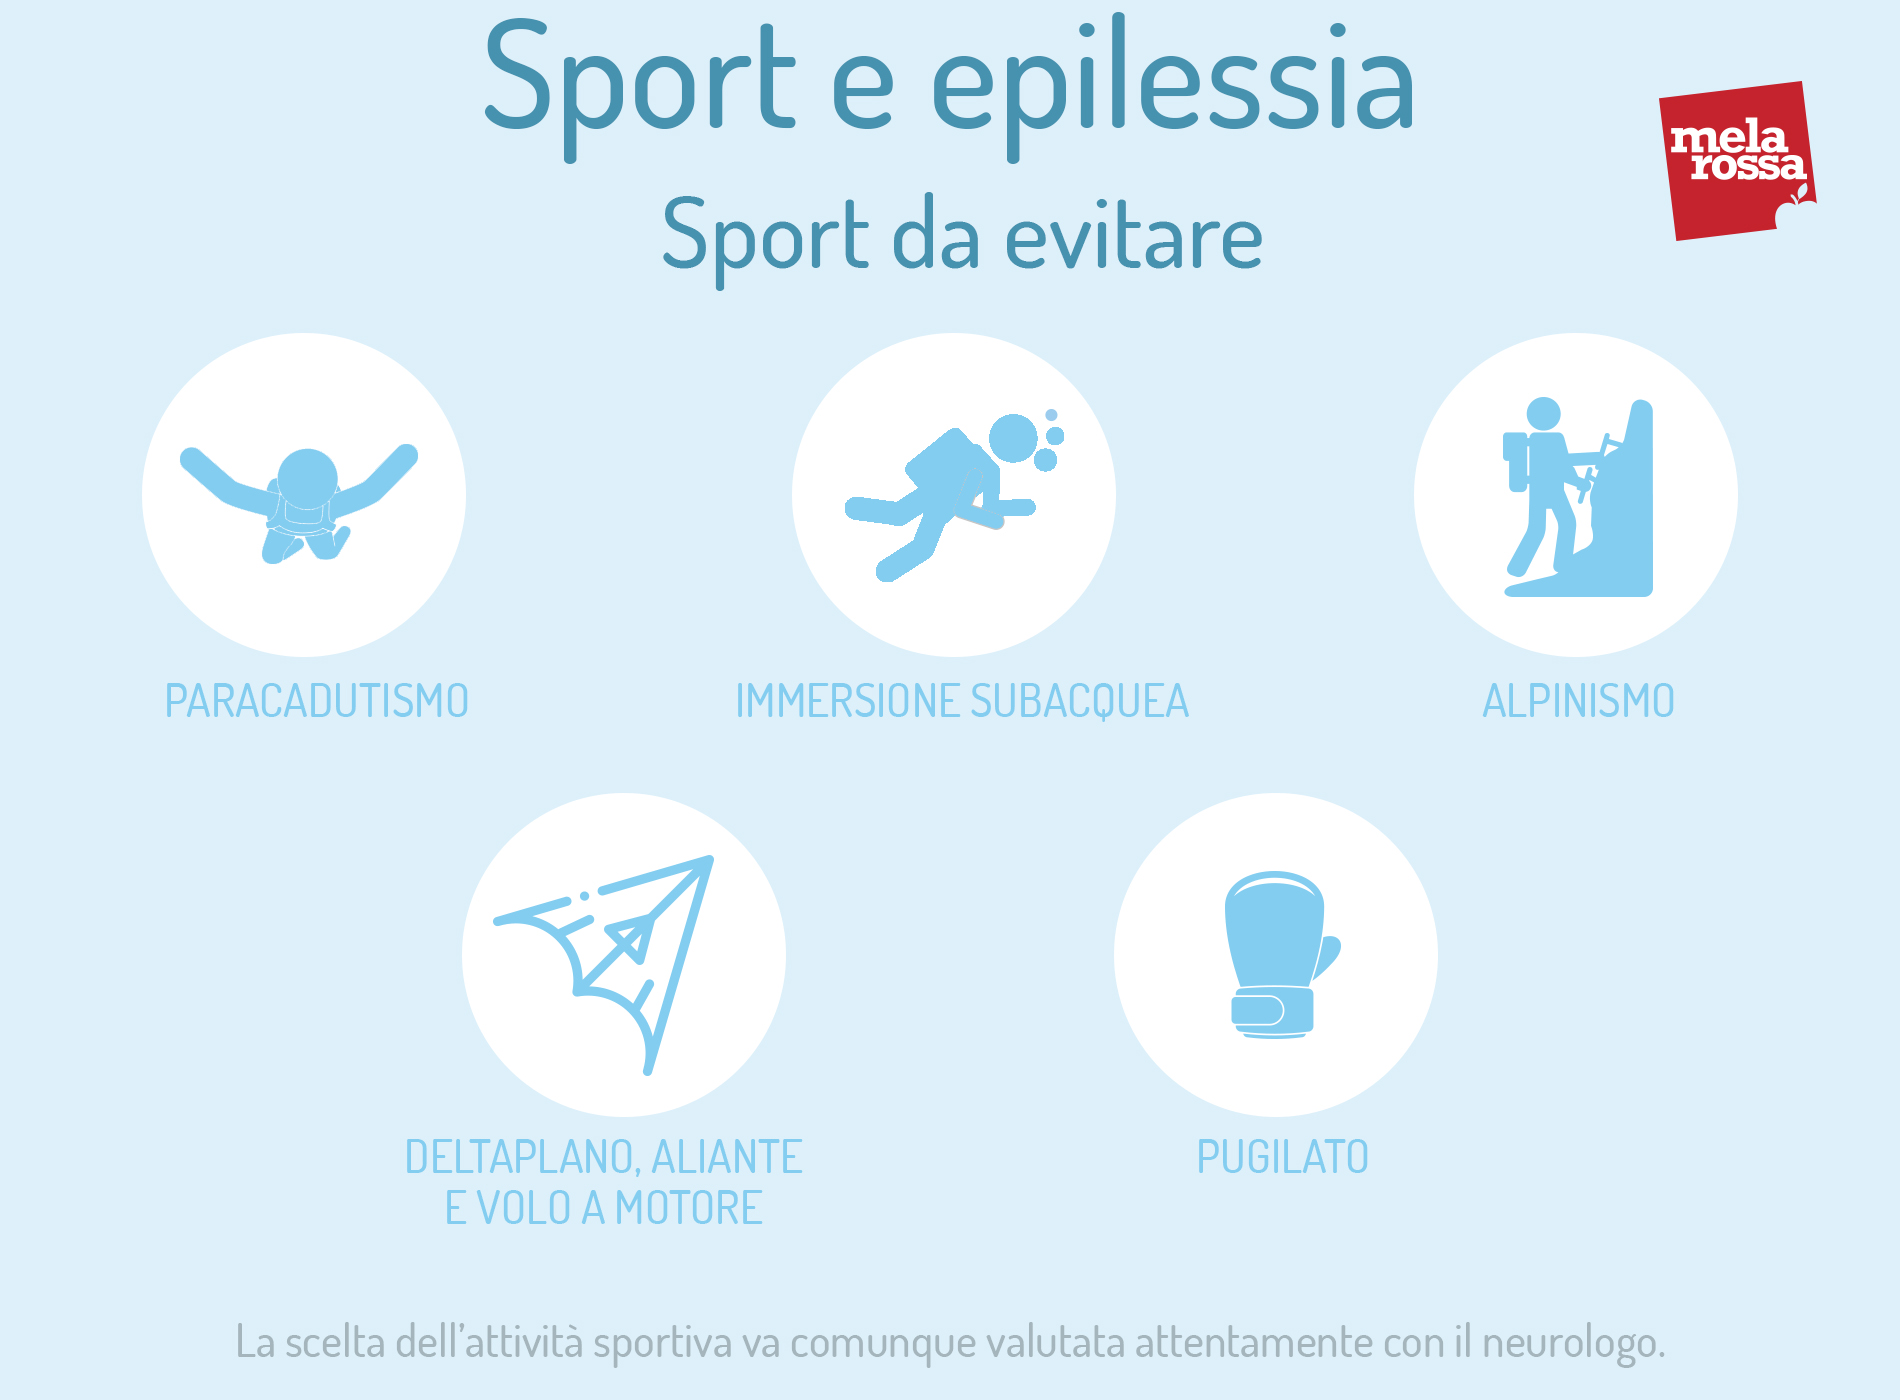 sport e epilessia: sport da evitare